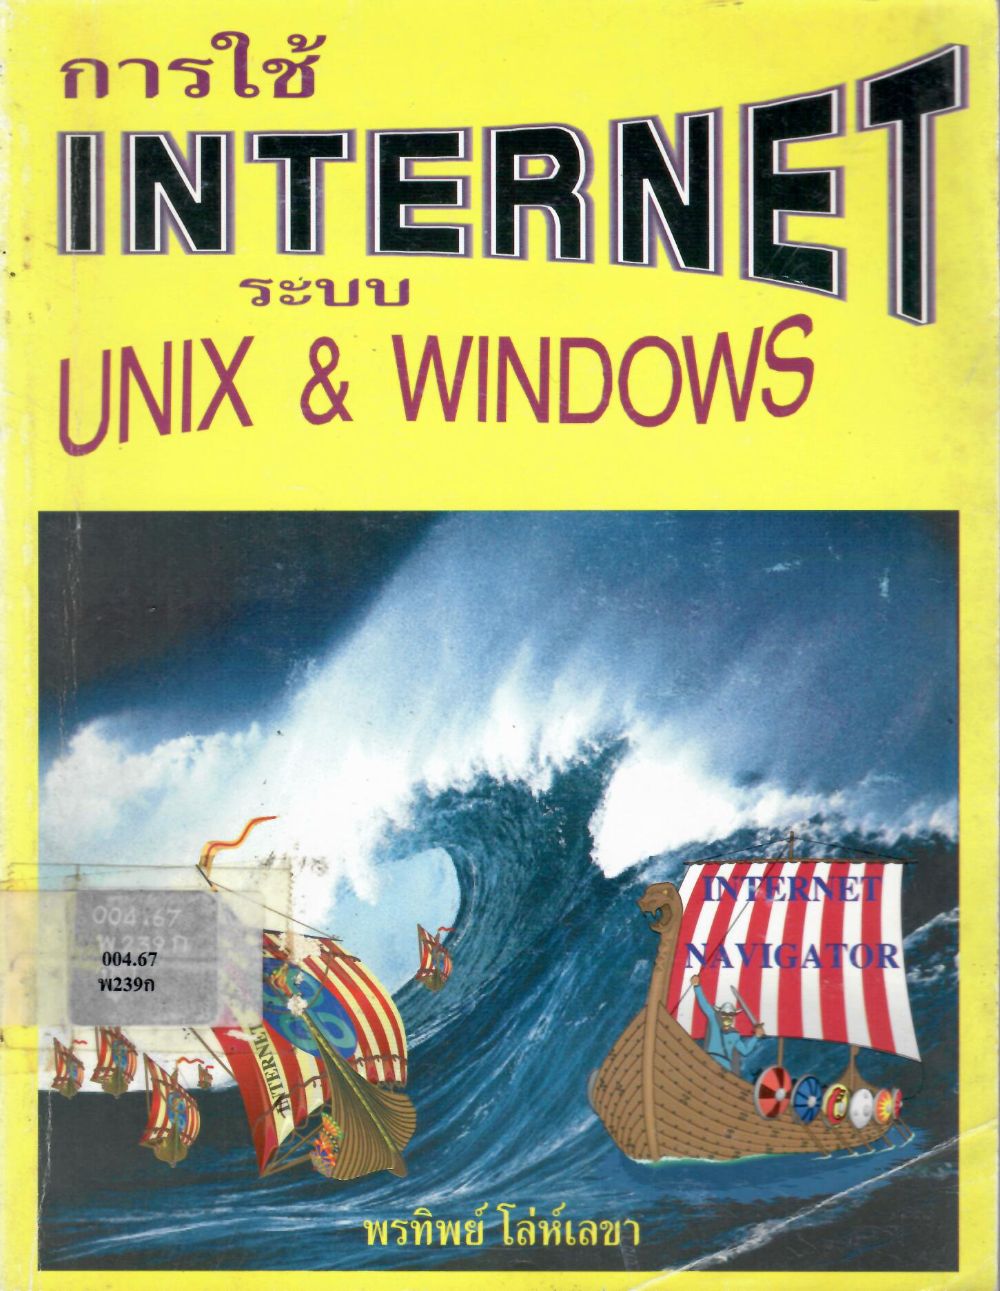 การใช้ INTERNET ระบบ UNIX & WINDOWS/ พรทิพย์ โล่ห์เลขา